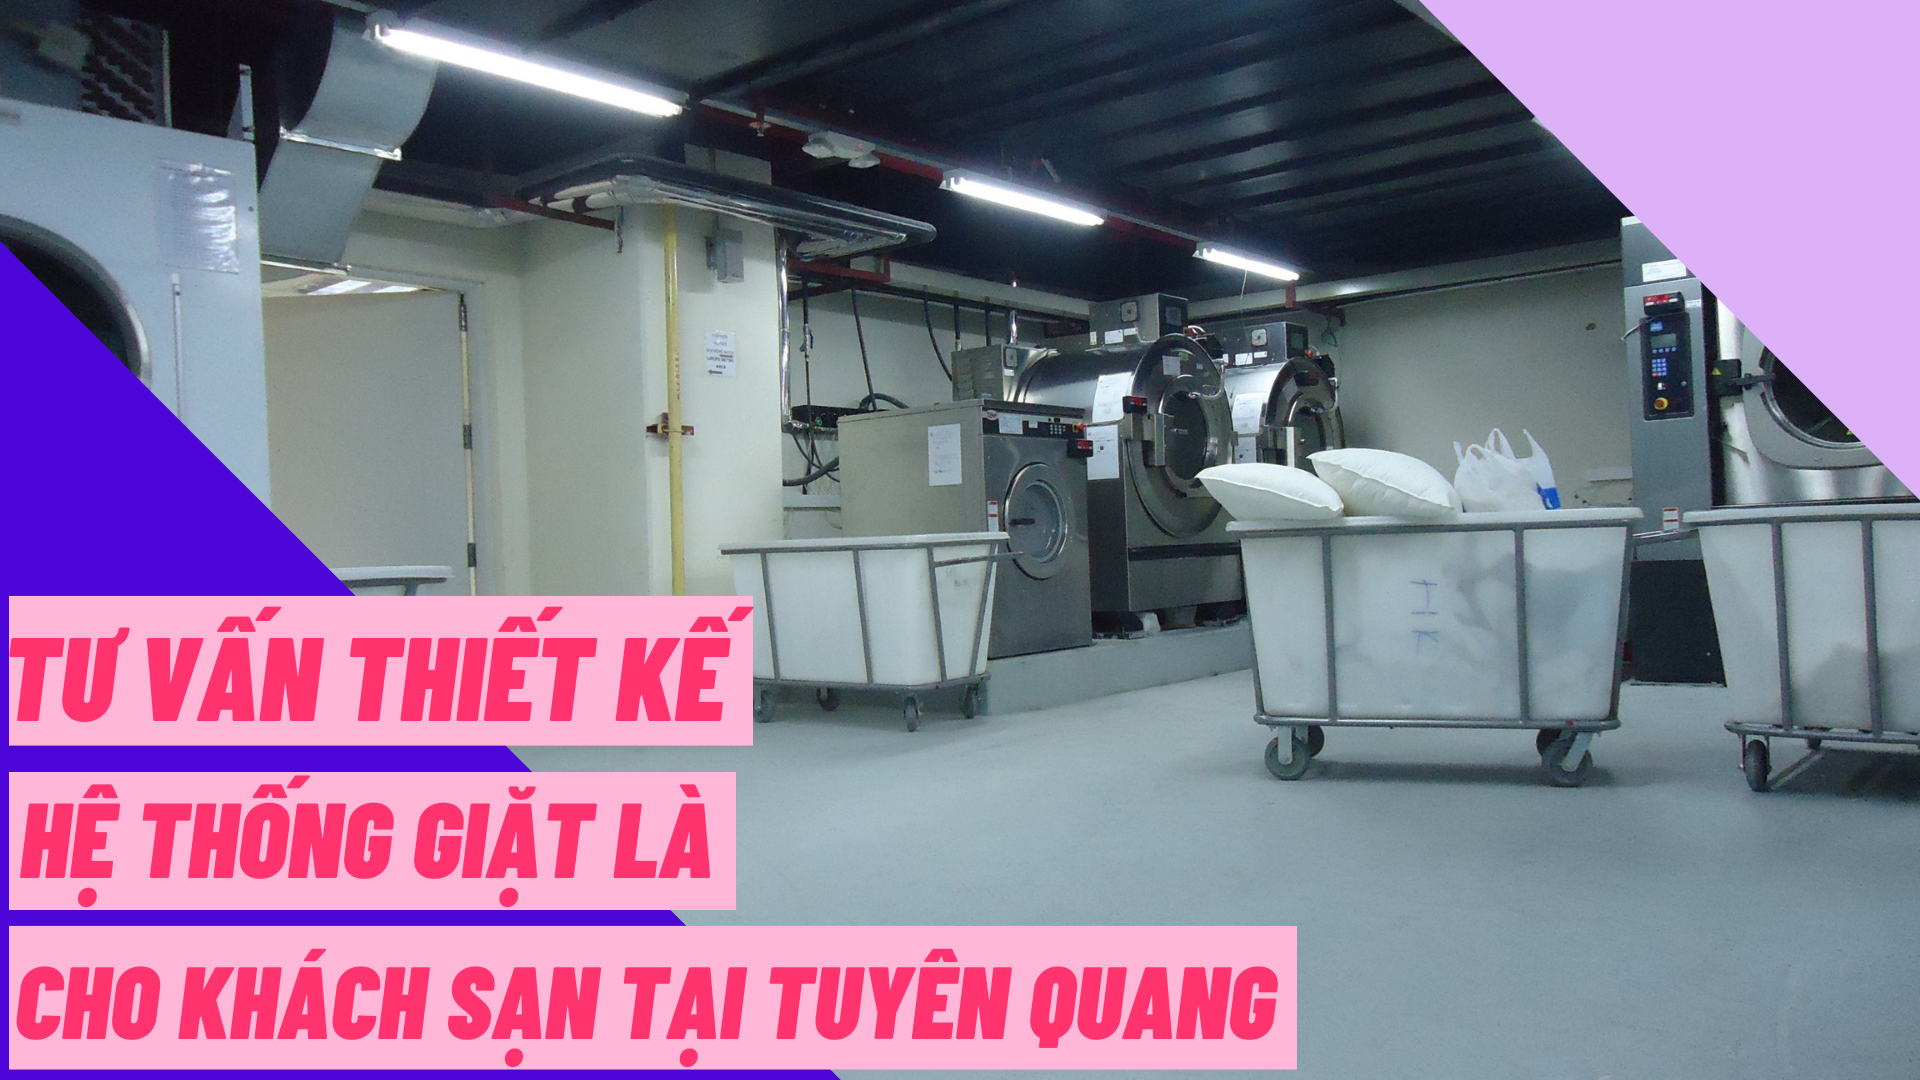 Tư vấn thiết kế hệ thống giặt là cho khách sạn tại Tuyên Quang